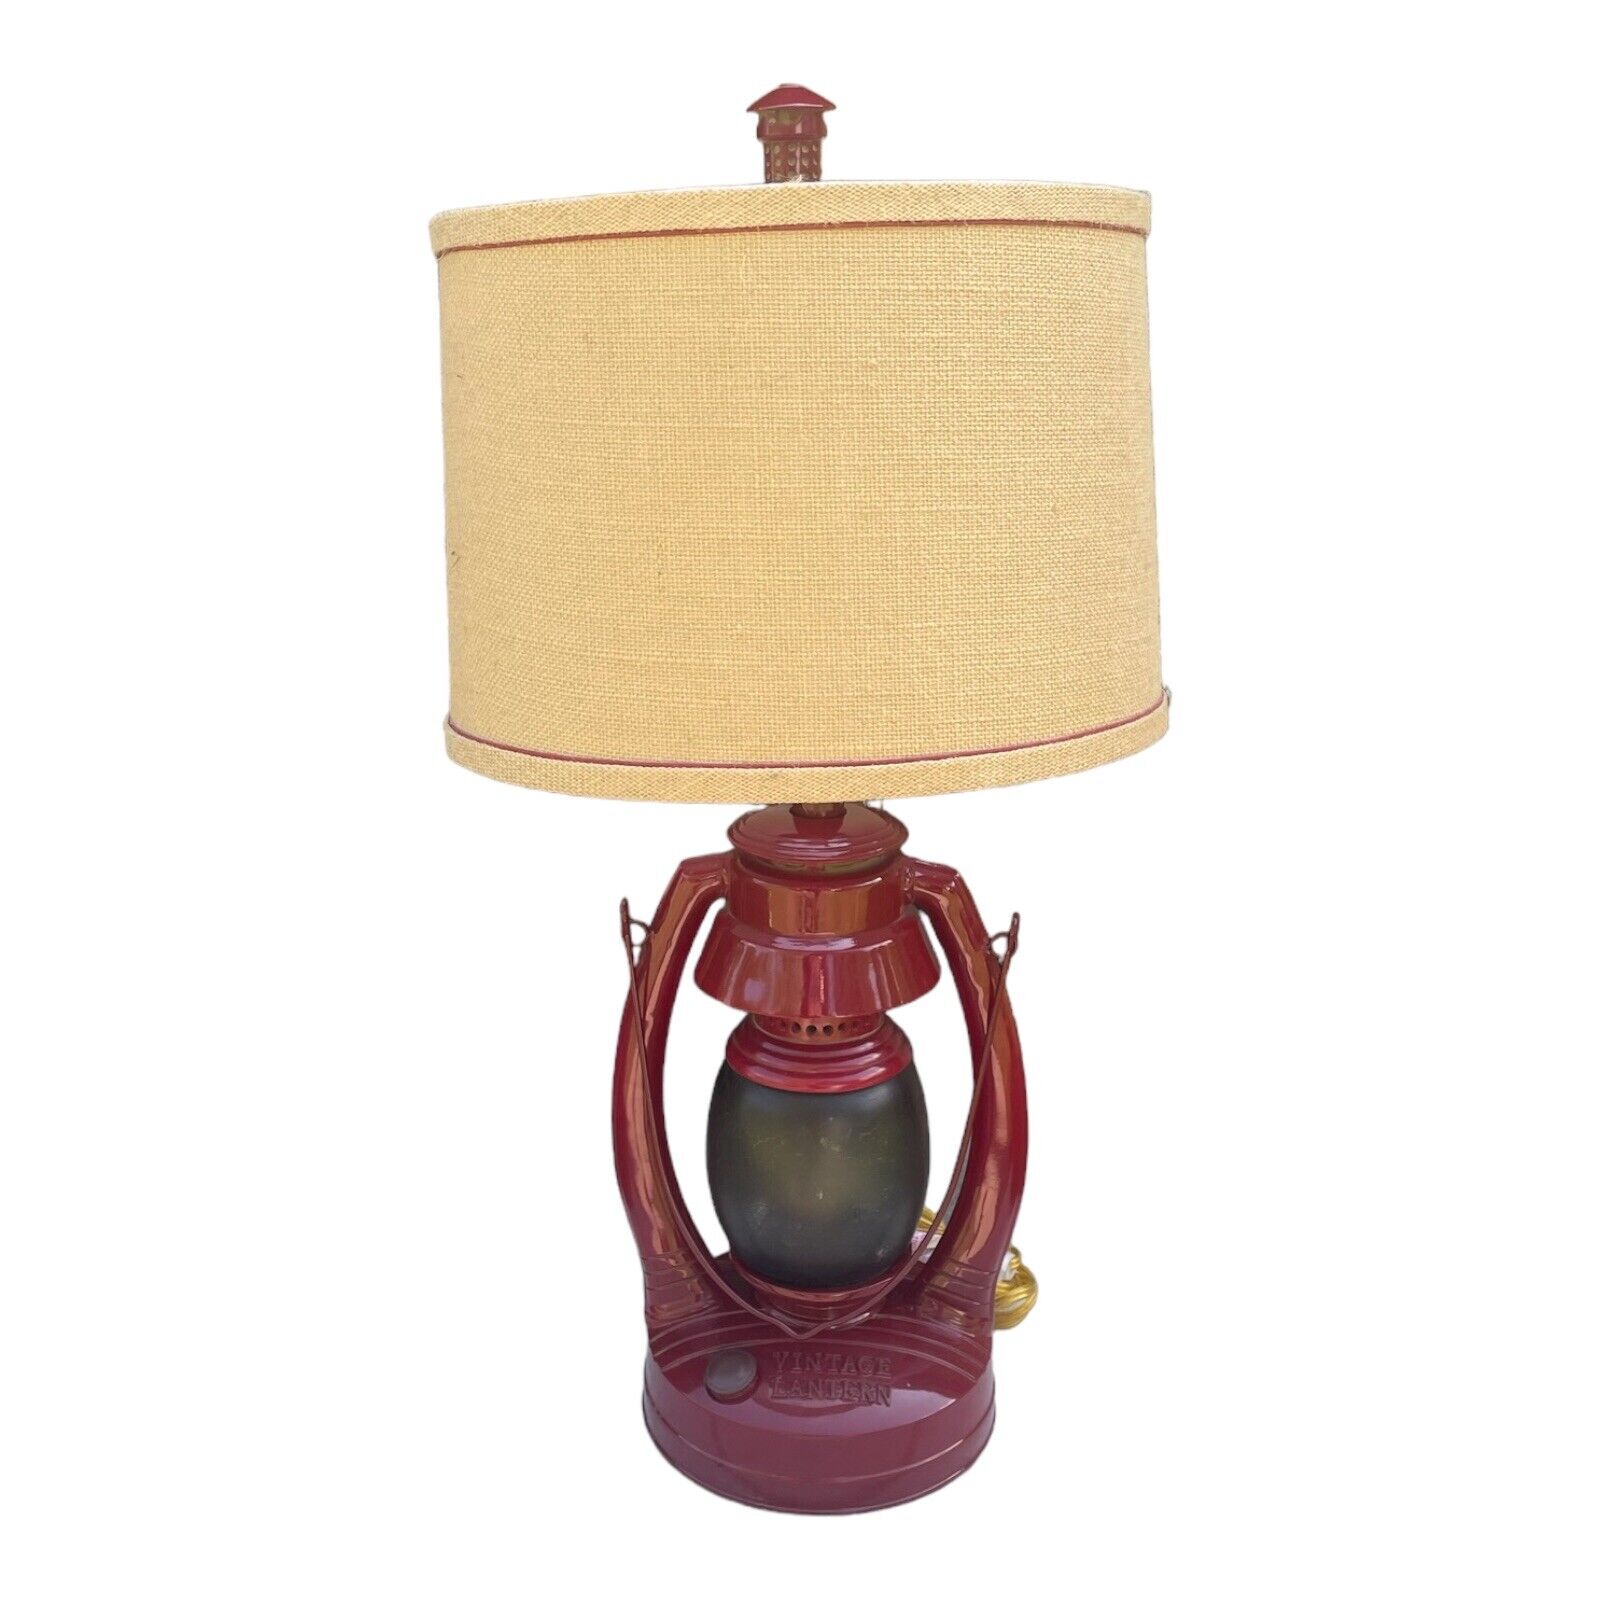 Vintage Direct CL2395S 26 in. VTG Lantern Table Lamp 2 Lights Red Test Video 